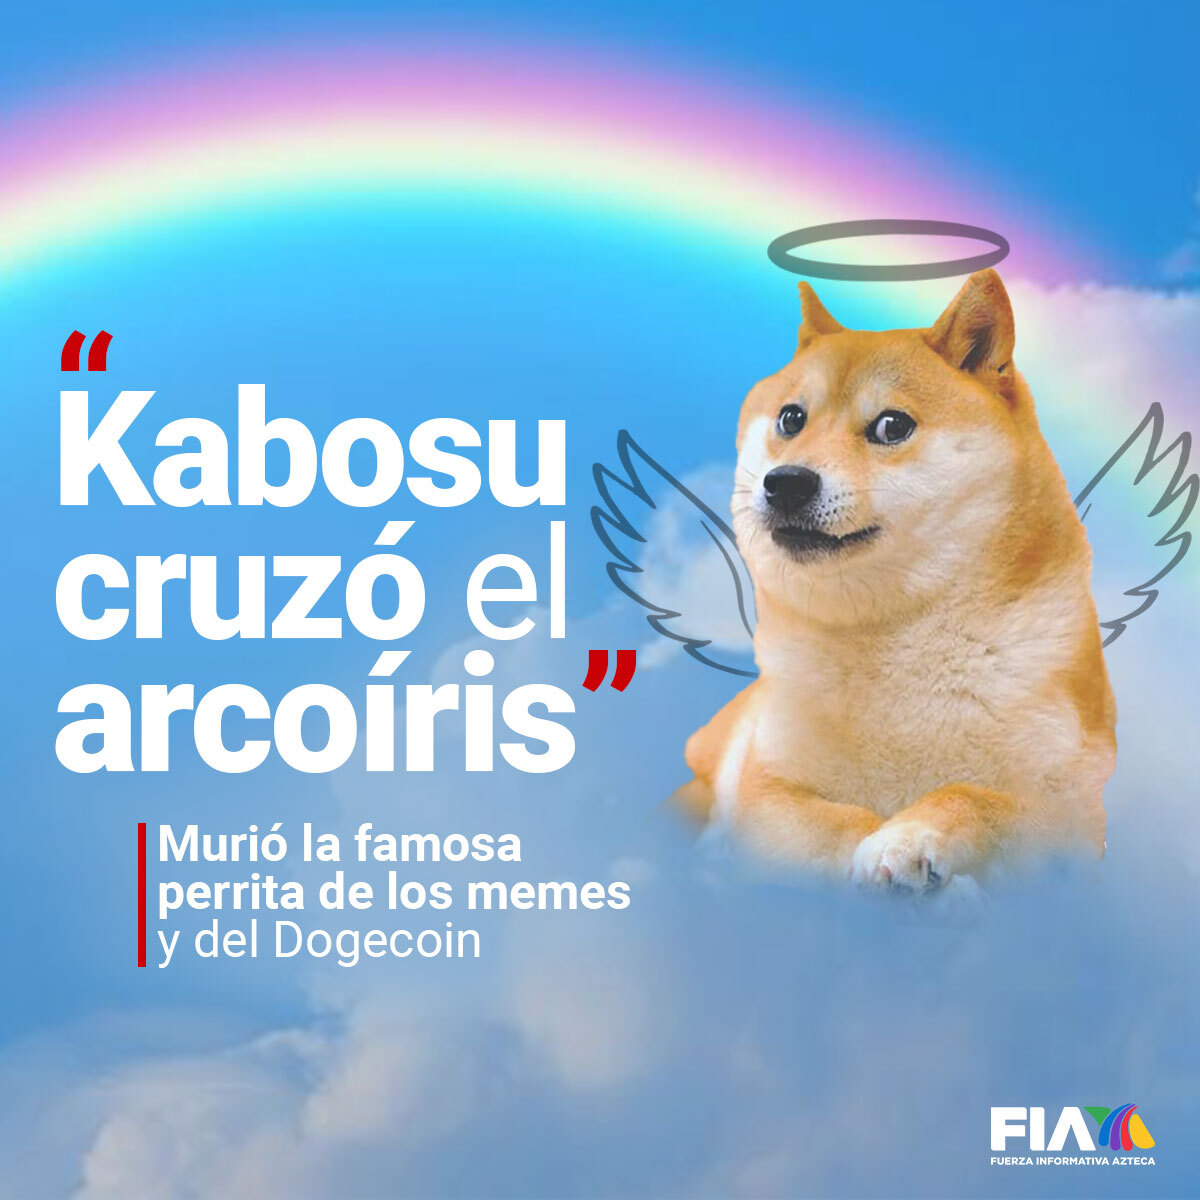 “Kabosu cruzó el puente del arcoíris' Murió la famosa perrita de los memes; su imagen inspiró la creación de la criptomoneda #Dogecoin, que recibió un impulso importante gracias a las inversiones de Elon Musk. aztecanoticias.info/3WRIx0H